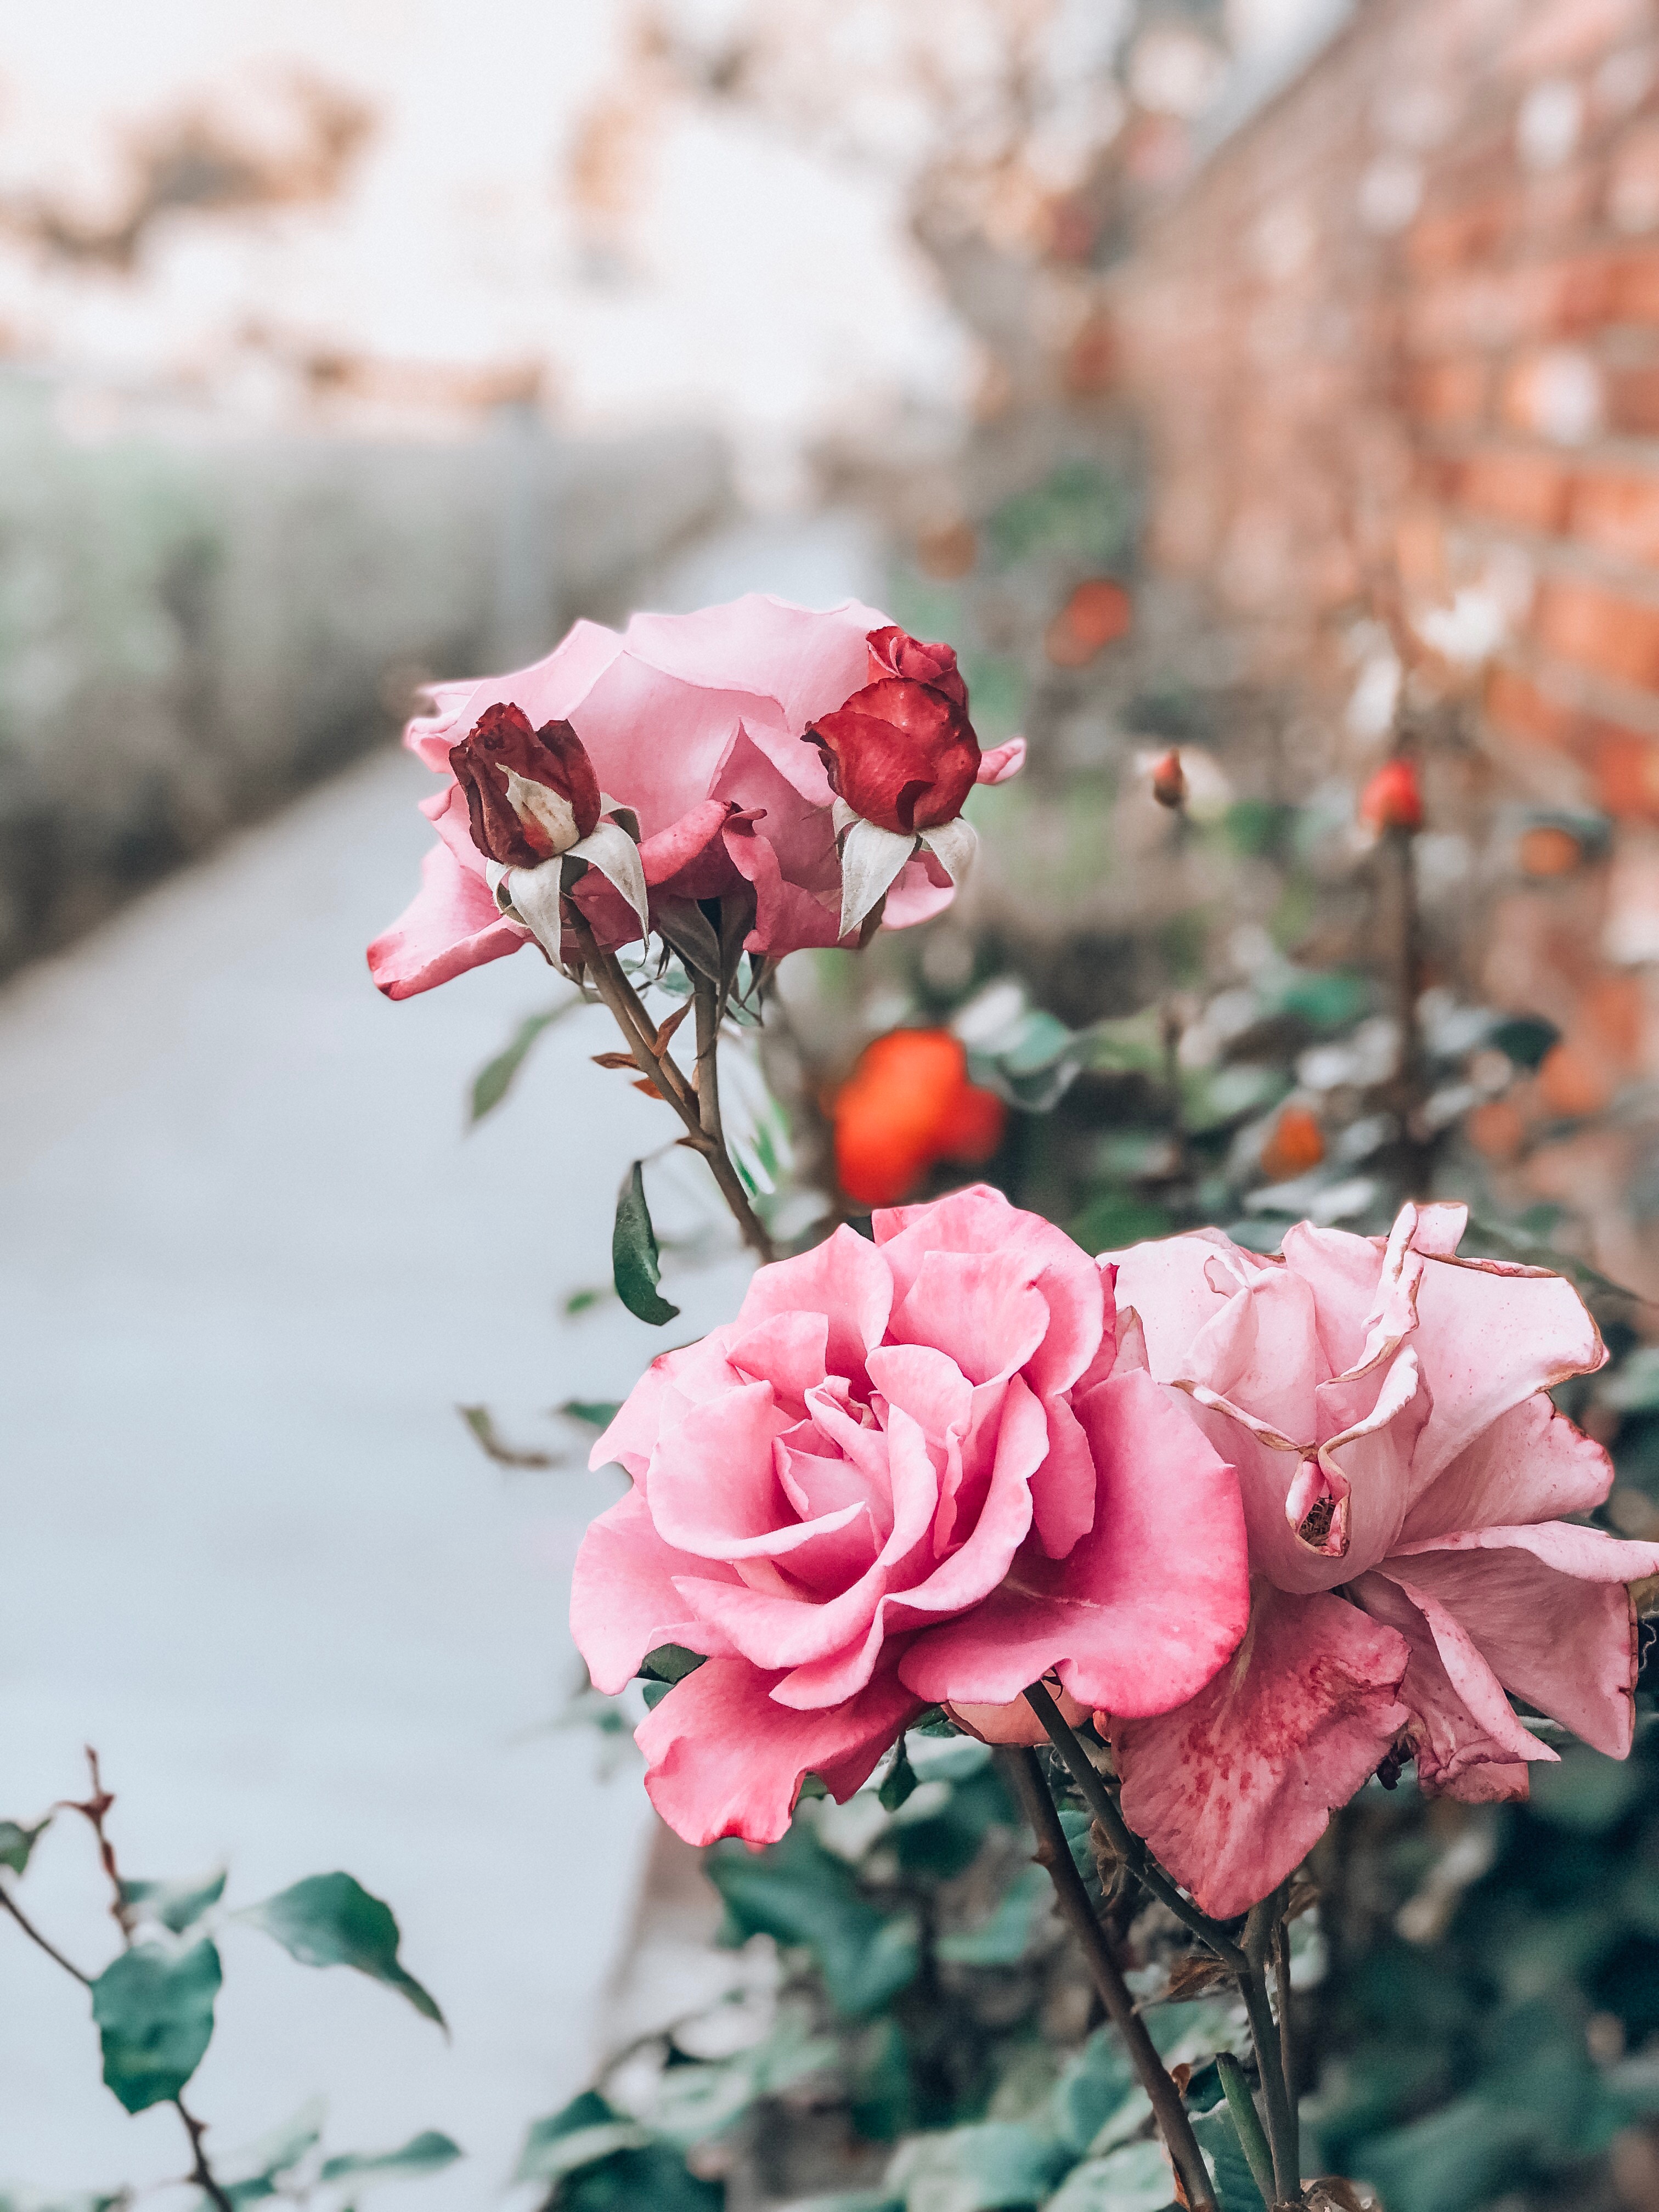 stalk, pink, flowers, flower, rose flower, rose, bud, stem High Definition image